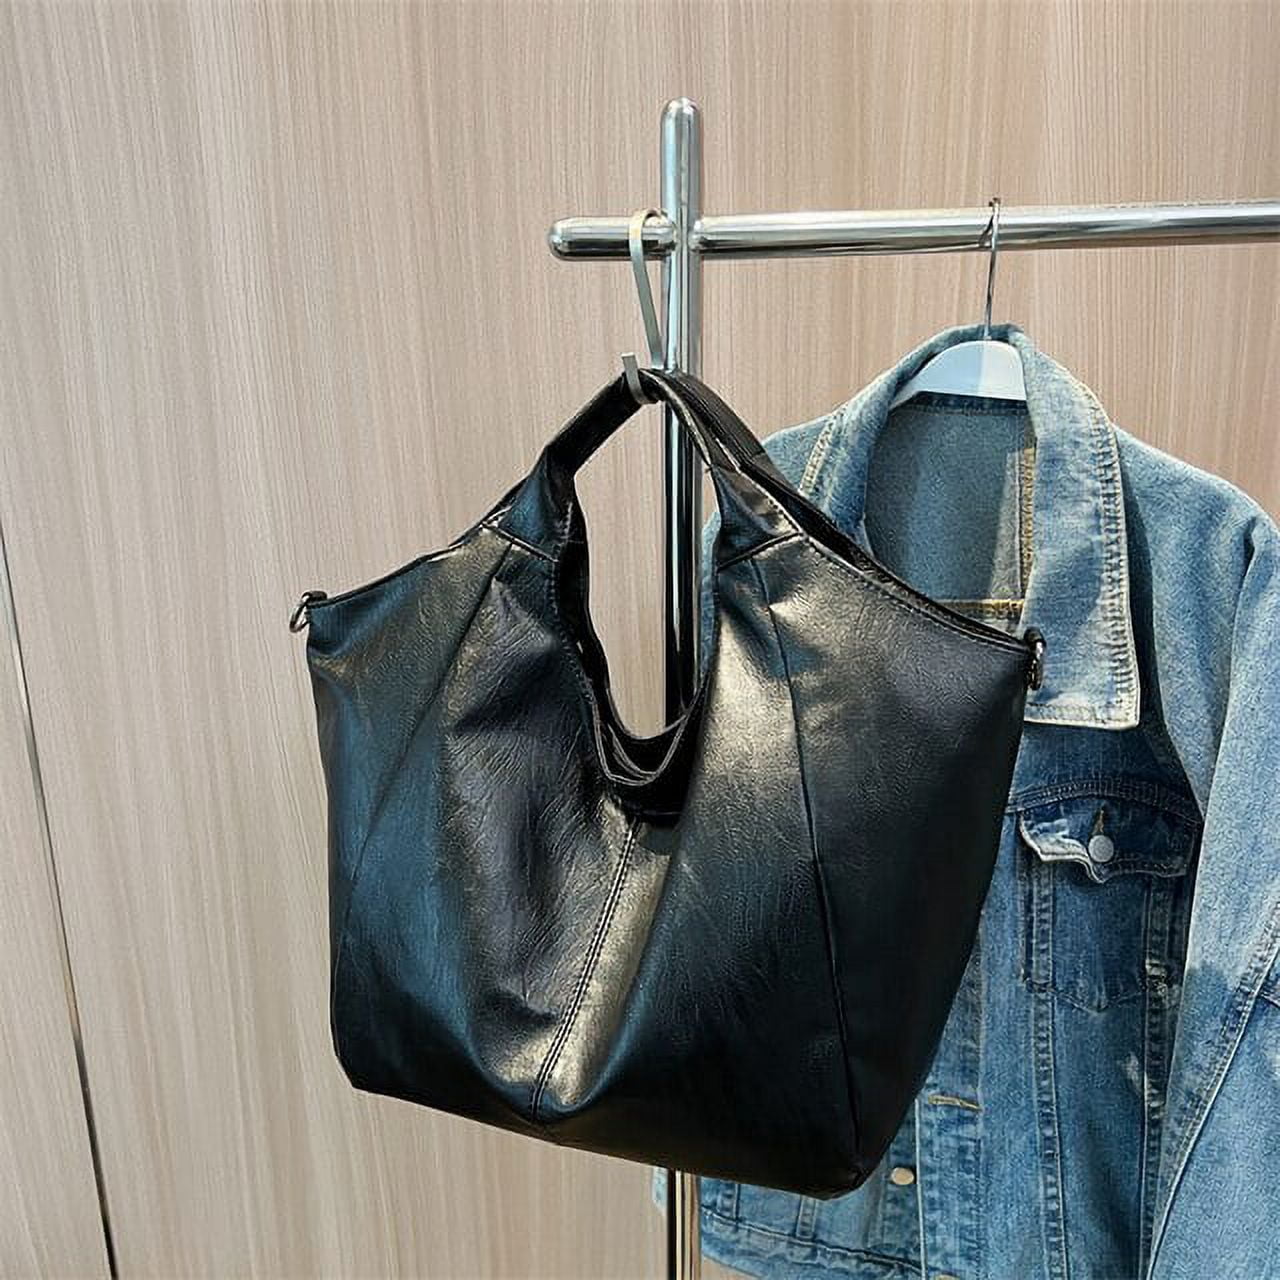 Large Shoulder Bag Soft Leather Bag Foldover Bag Designer 